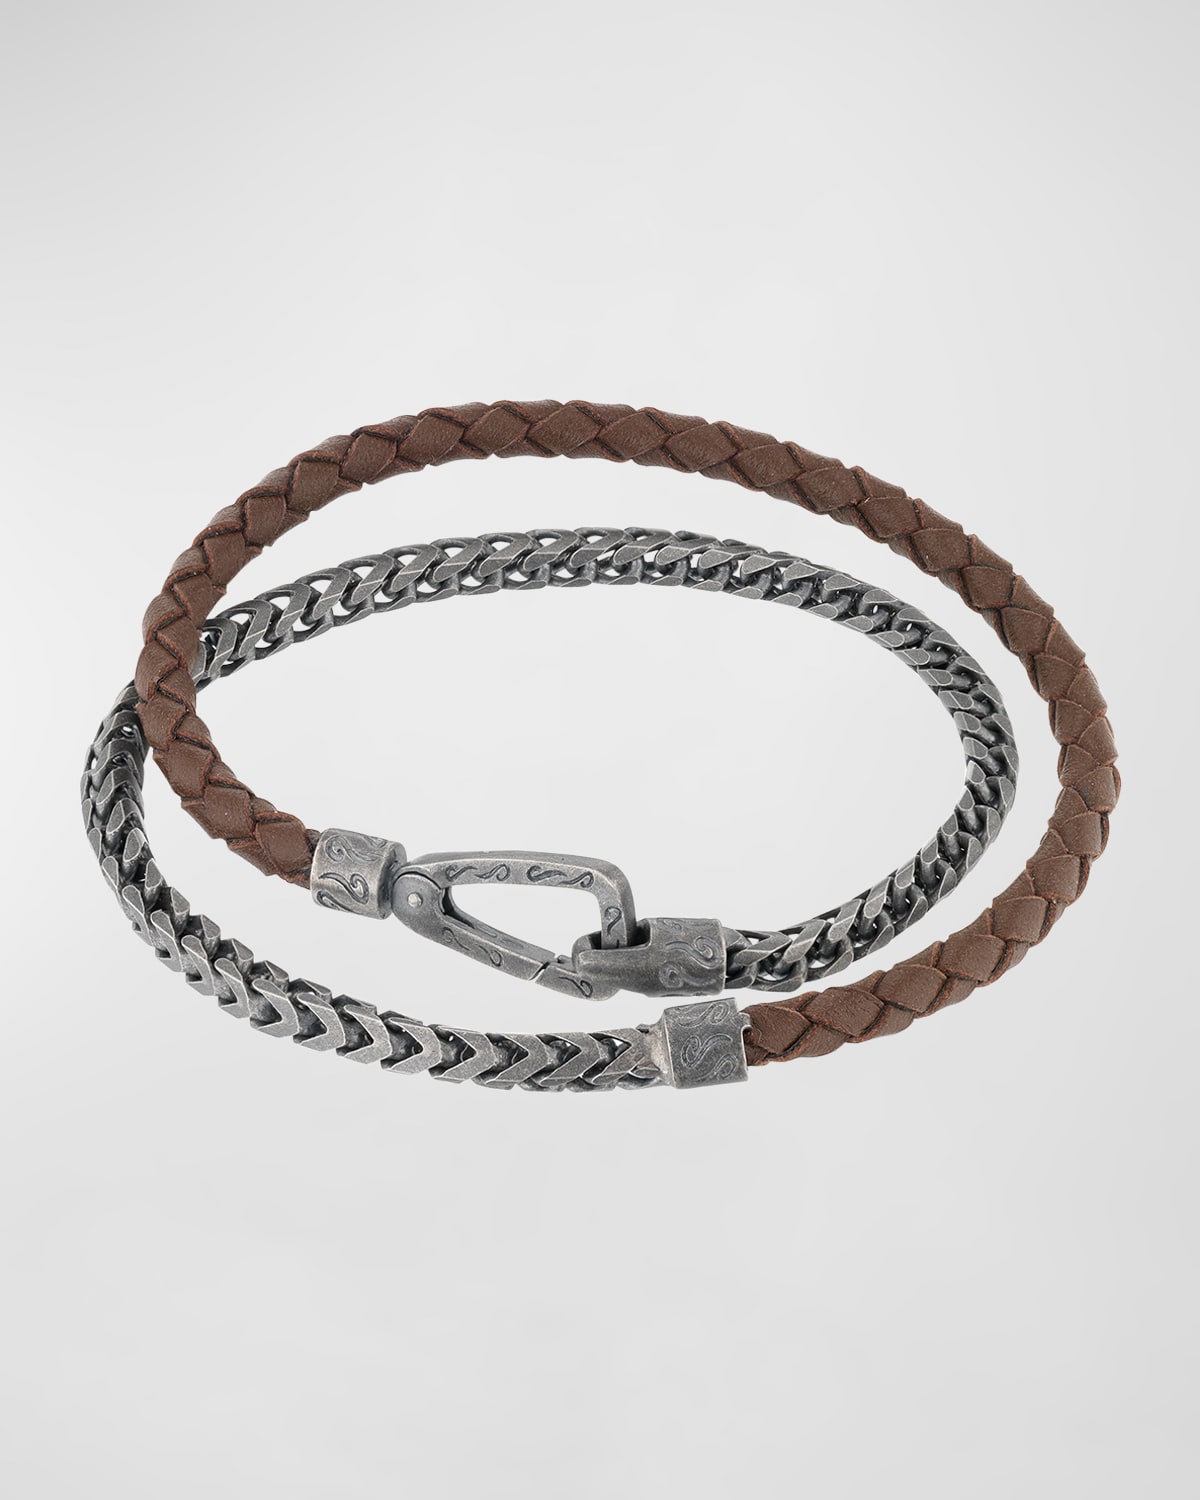 Men's Lash Double Wrap Leather Franco Chain Combo Bracelet with Push Clasp